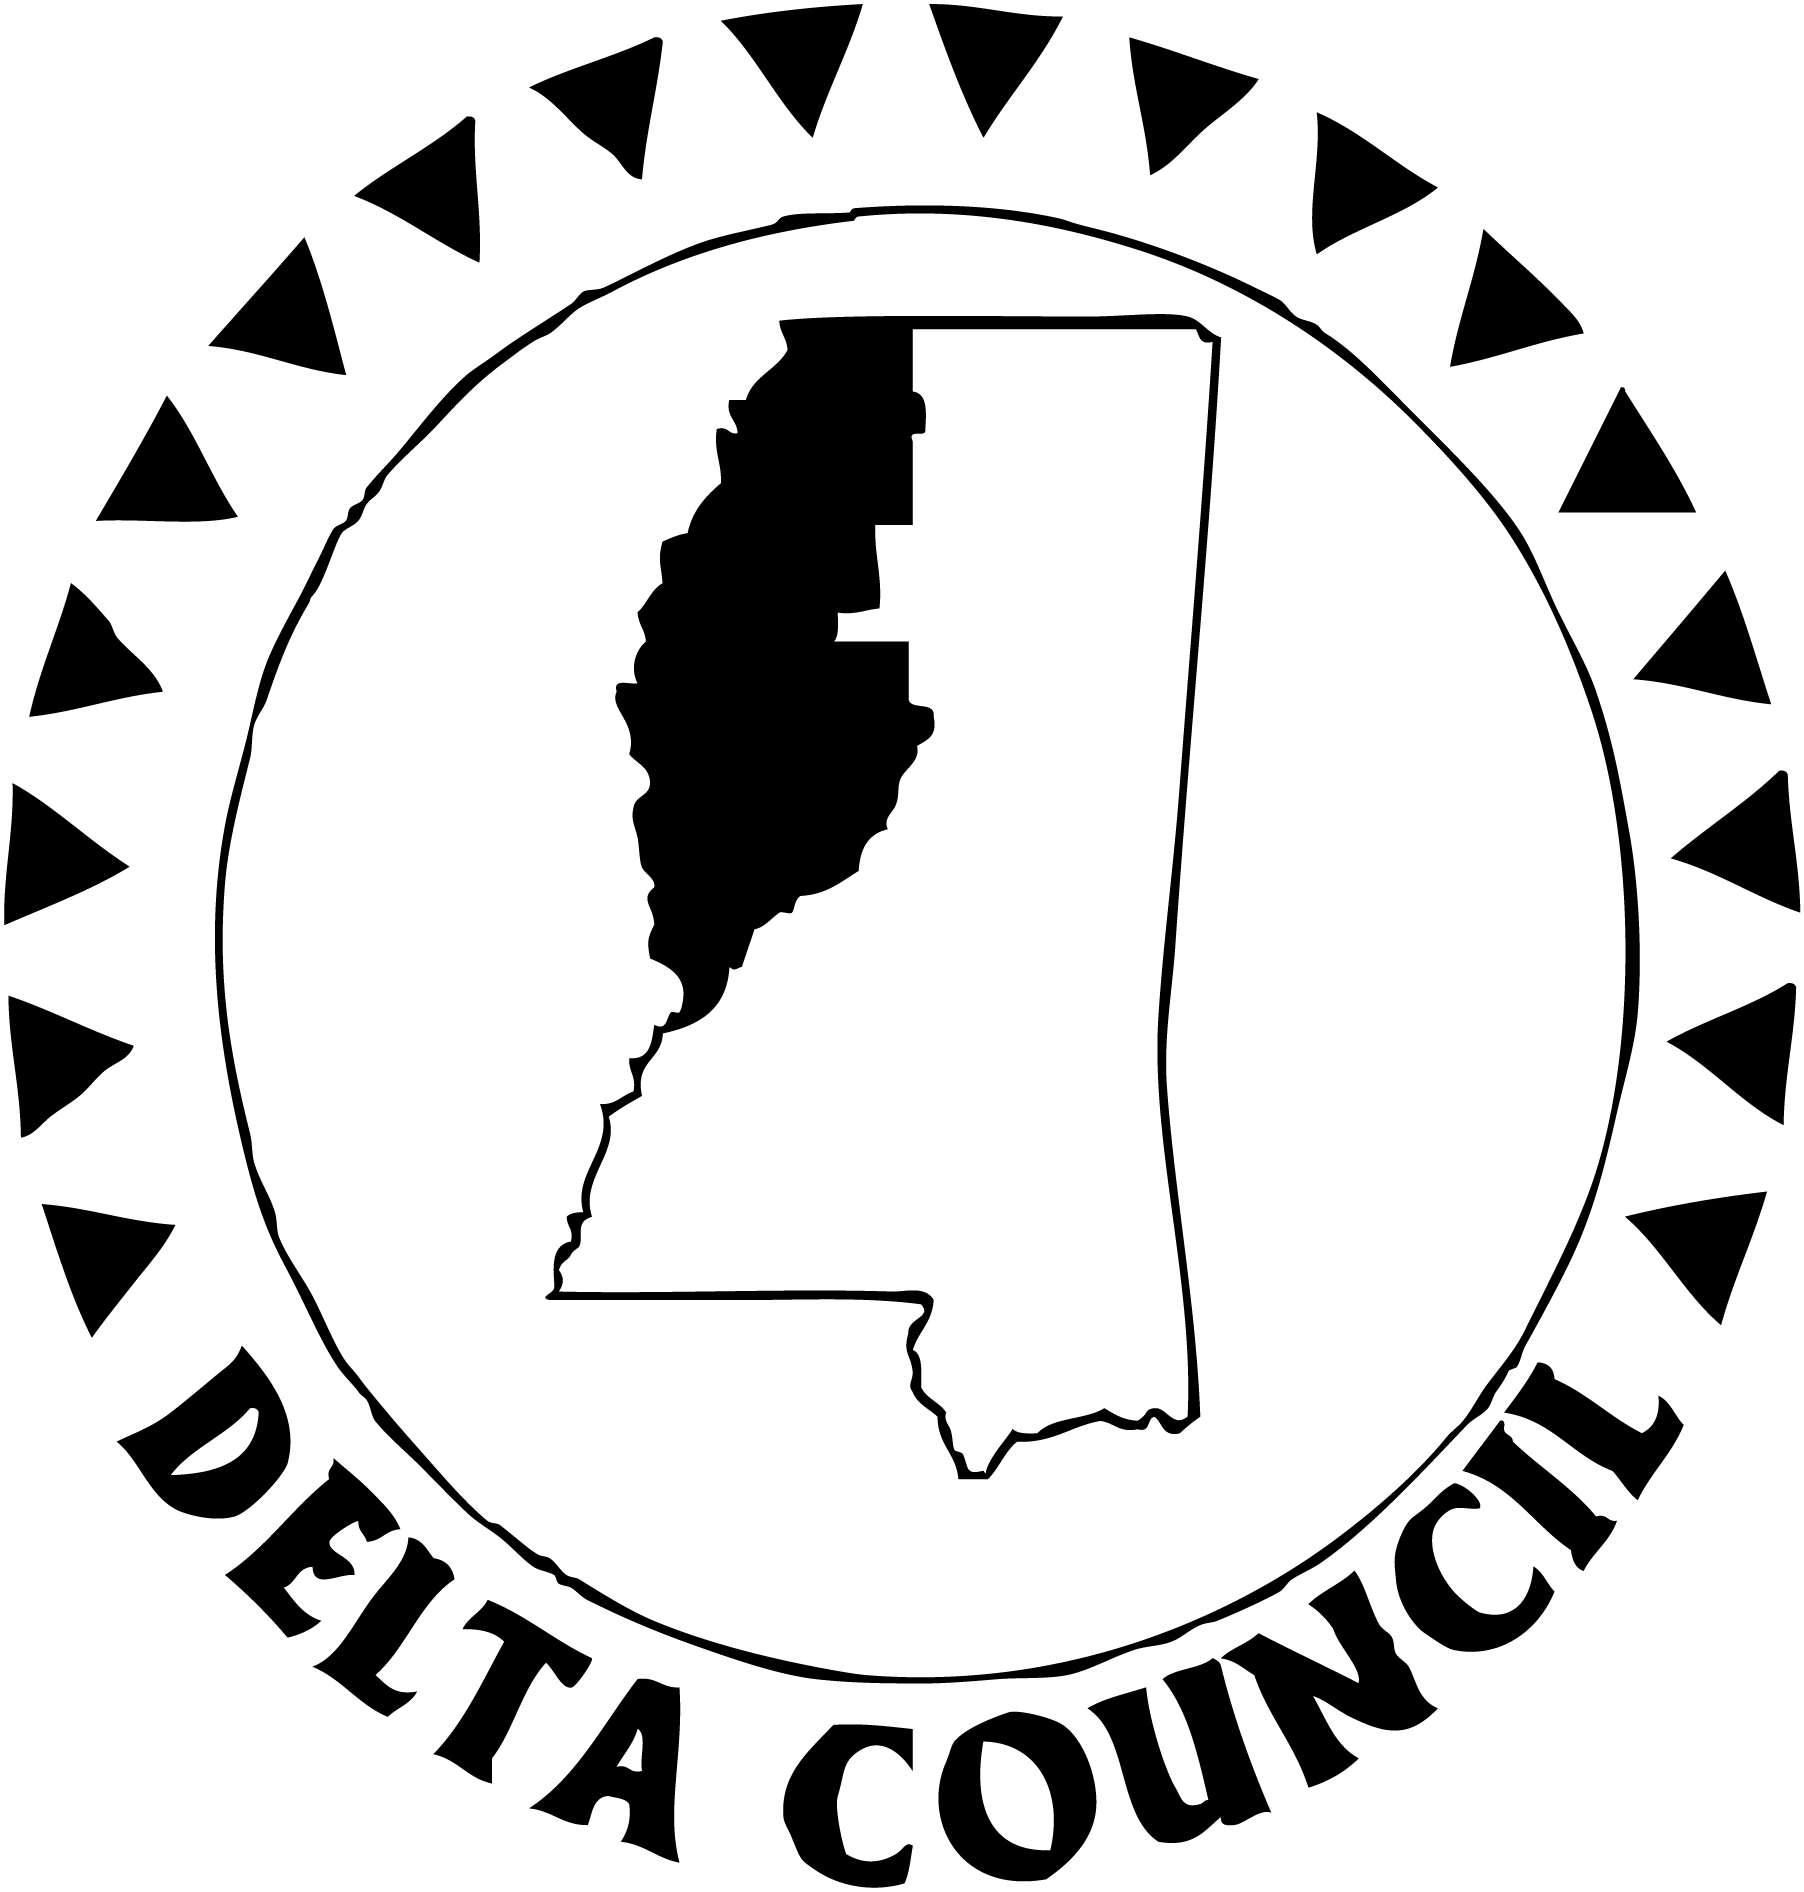 Delta Council